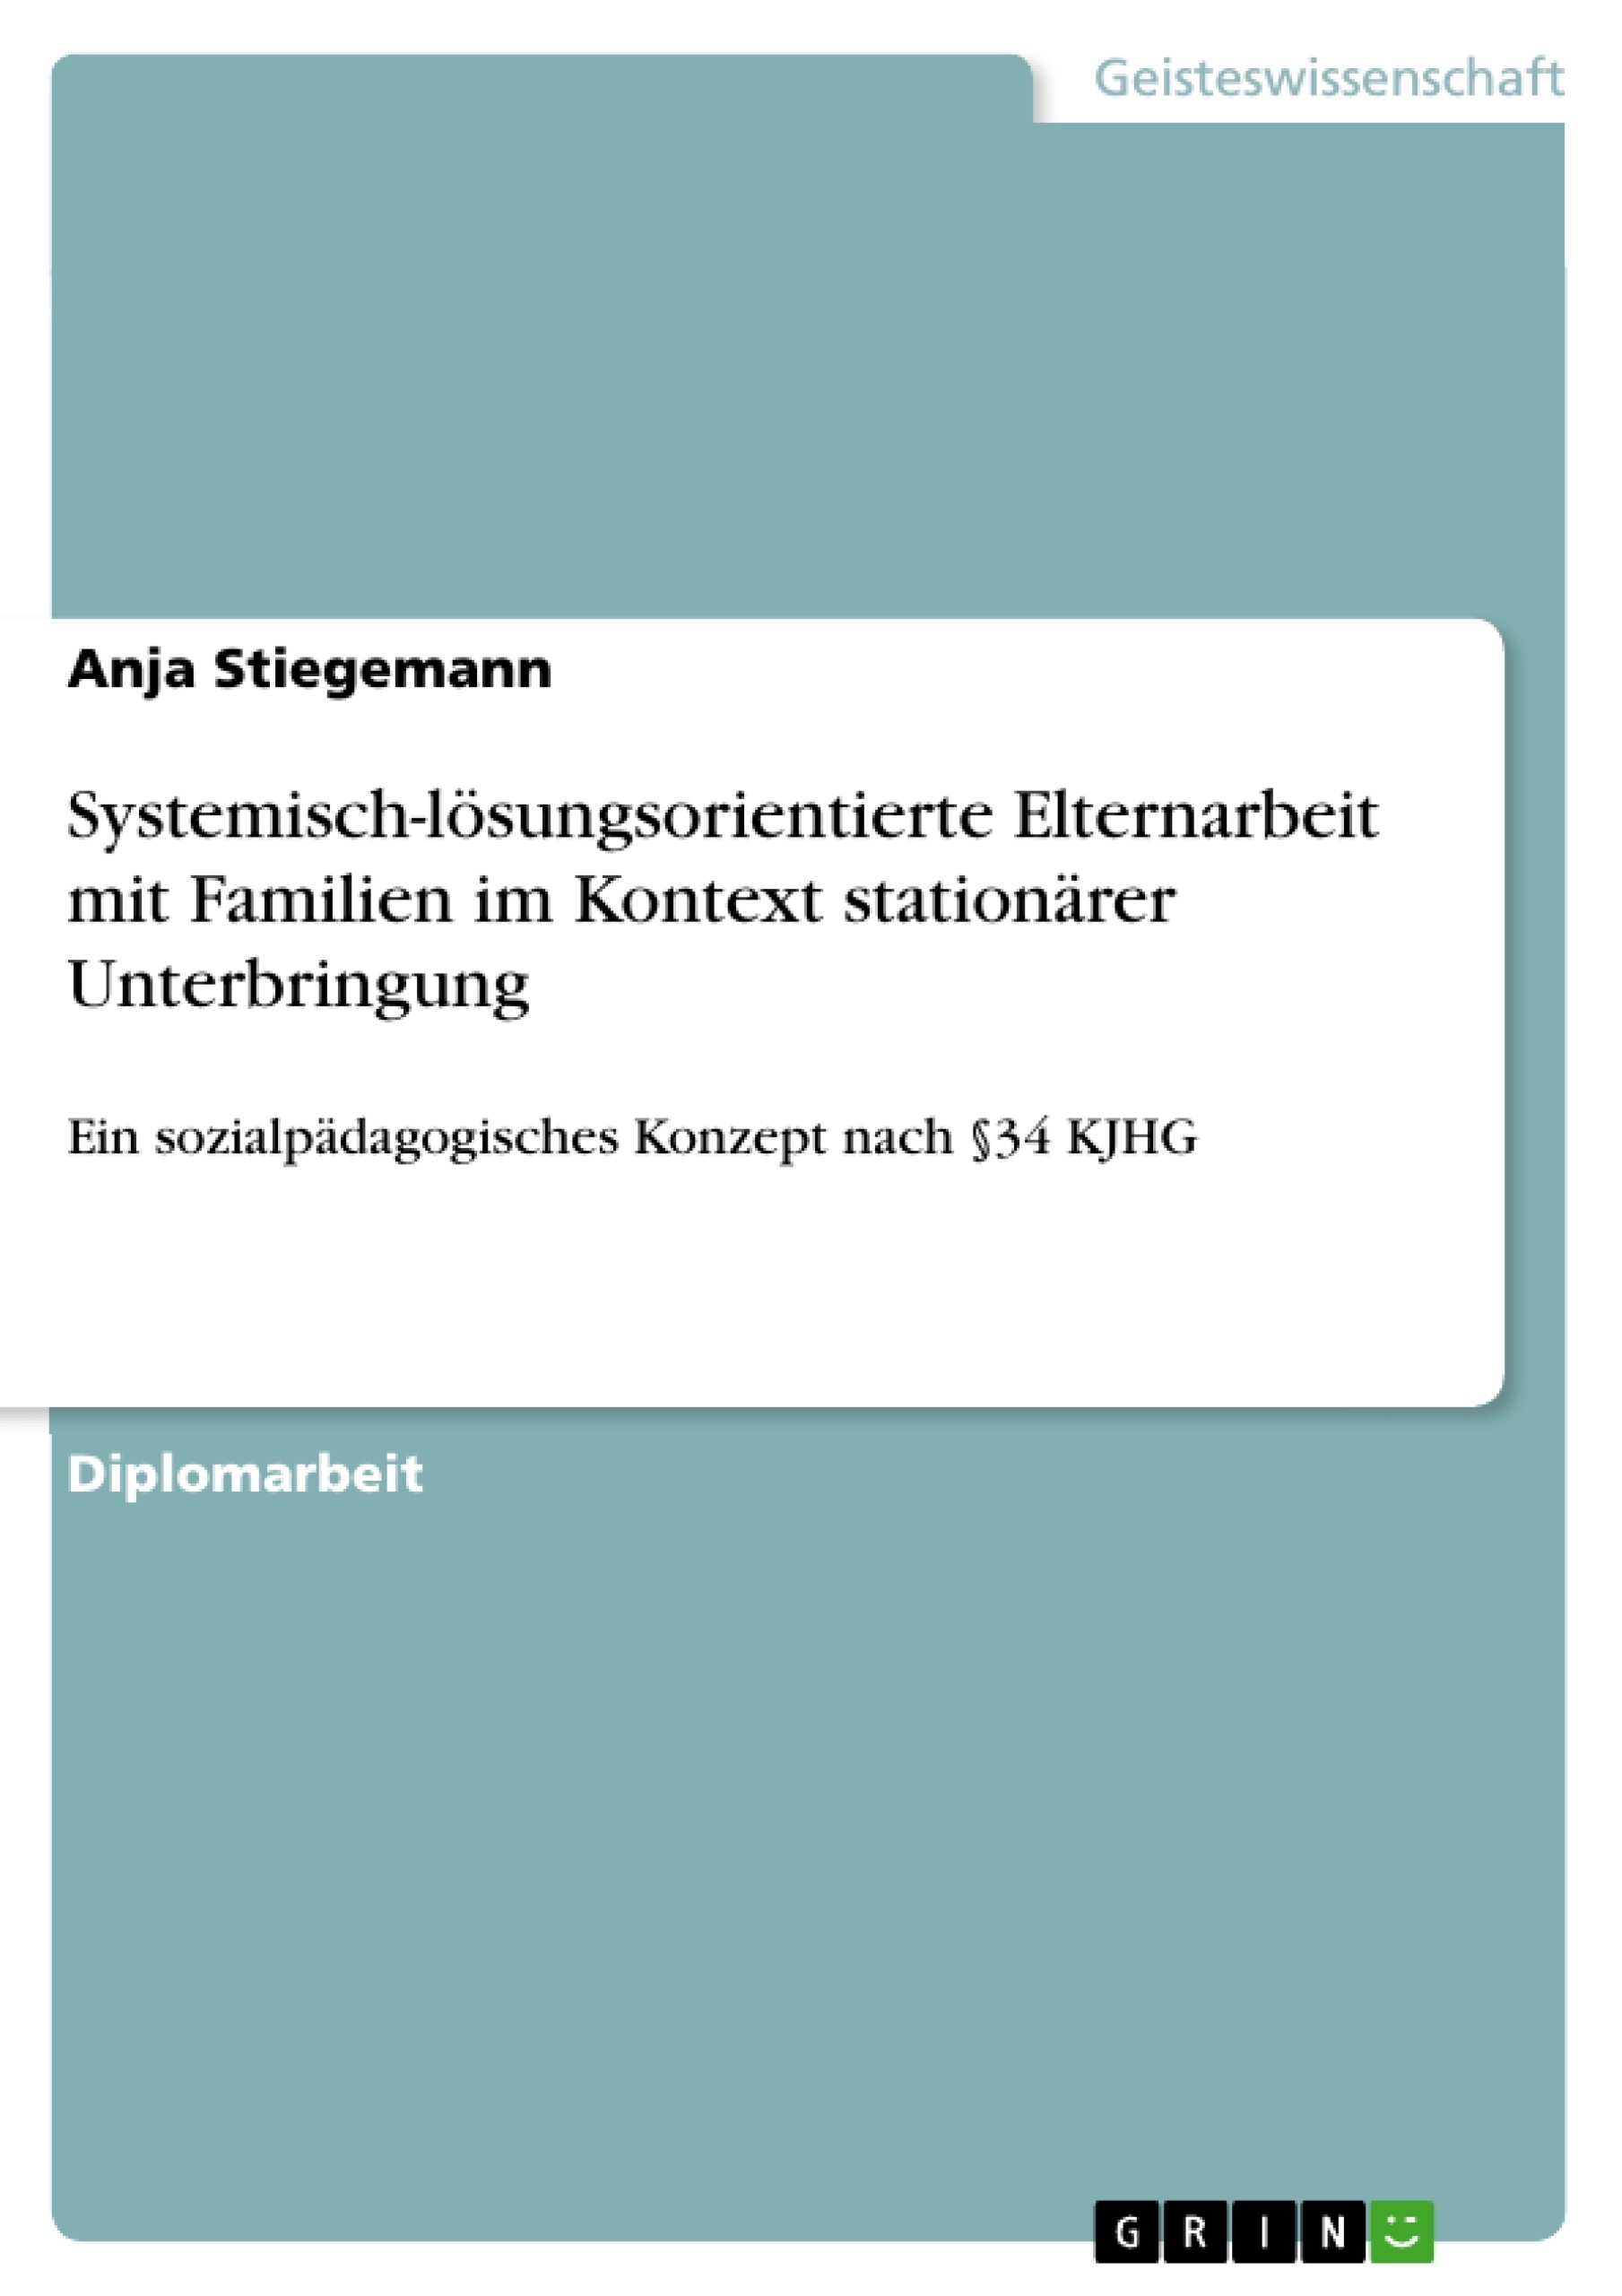 Title: Systemisch-lösungsorientierte Elternarbeit mit Familien im Kontext stationärer Unterbringung